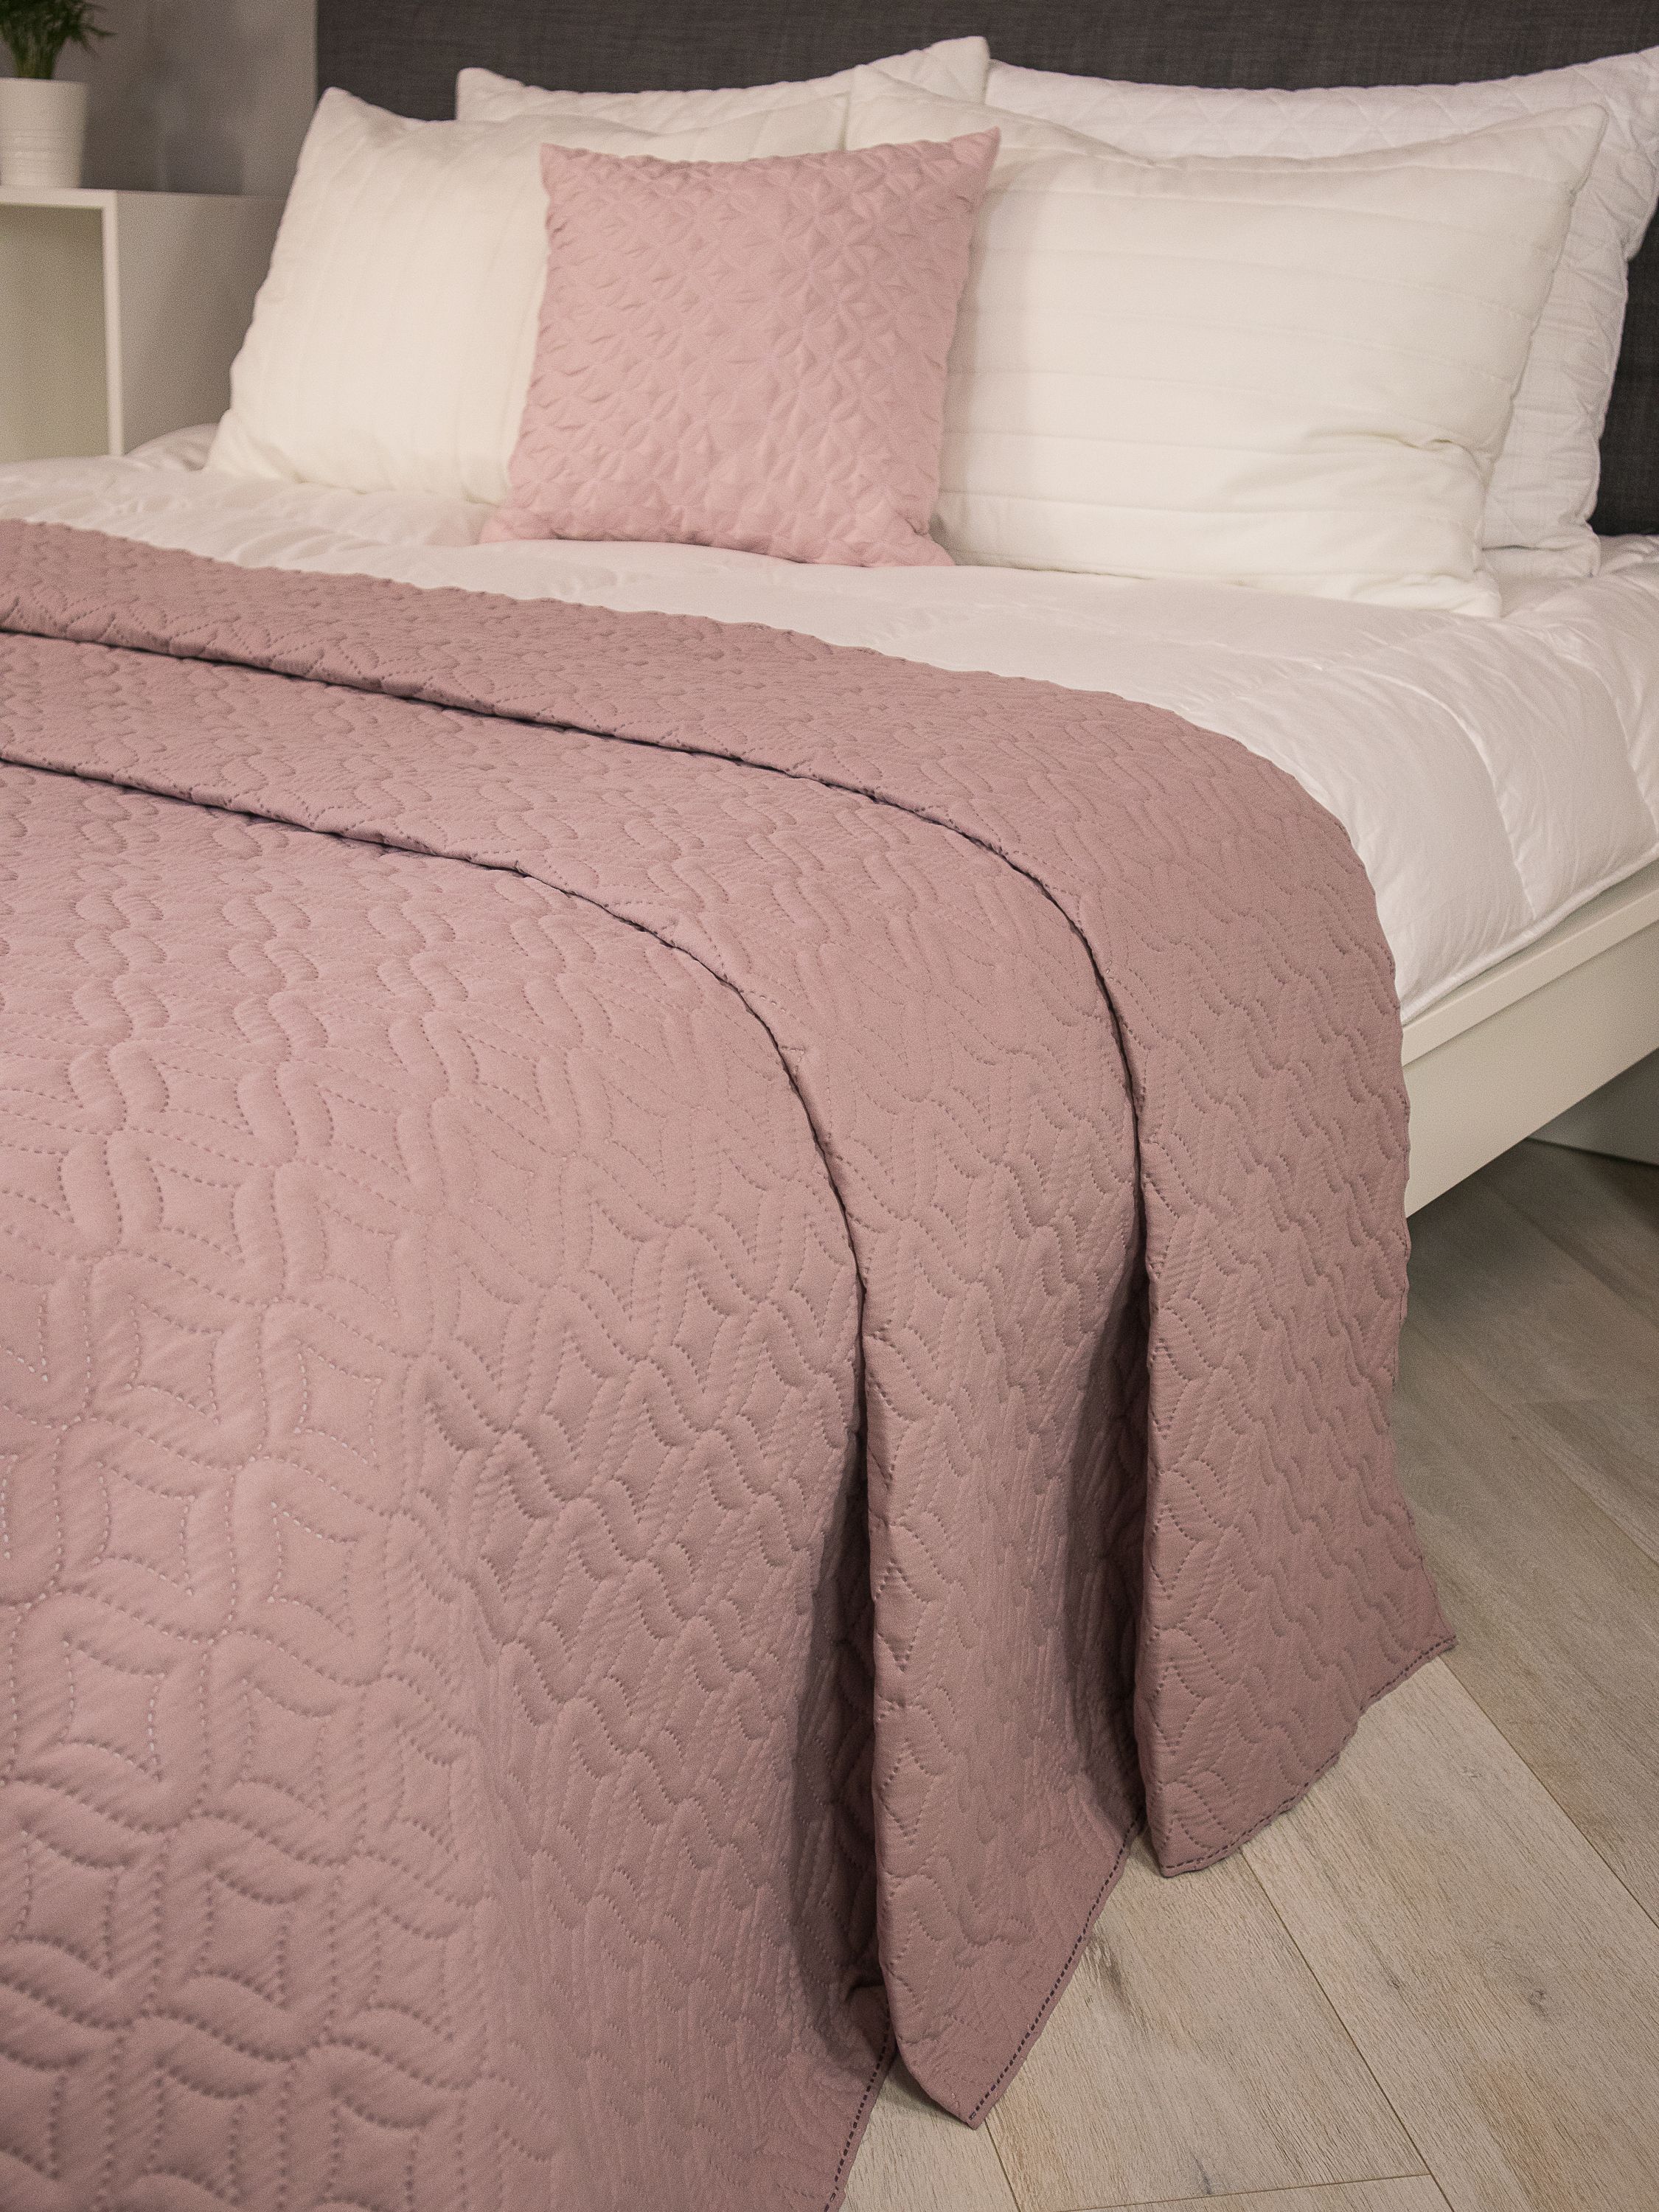 Розовое покрывало на кровать